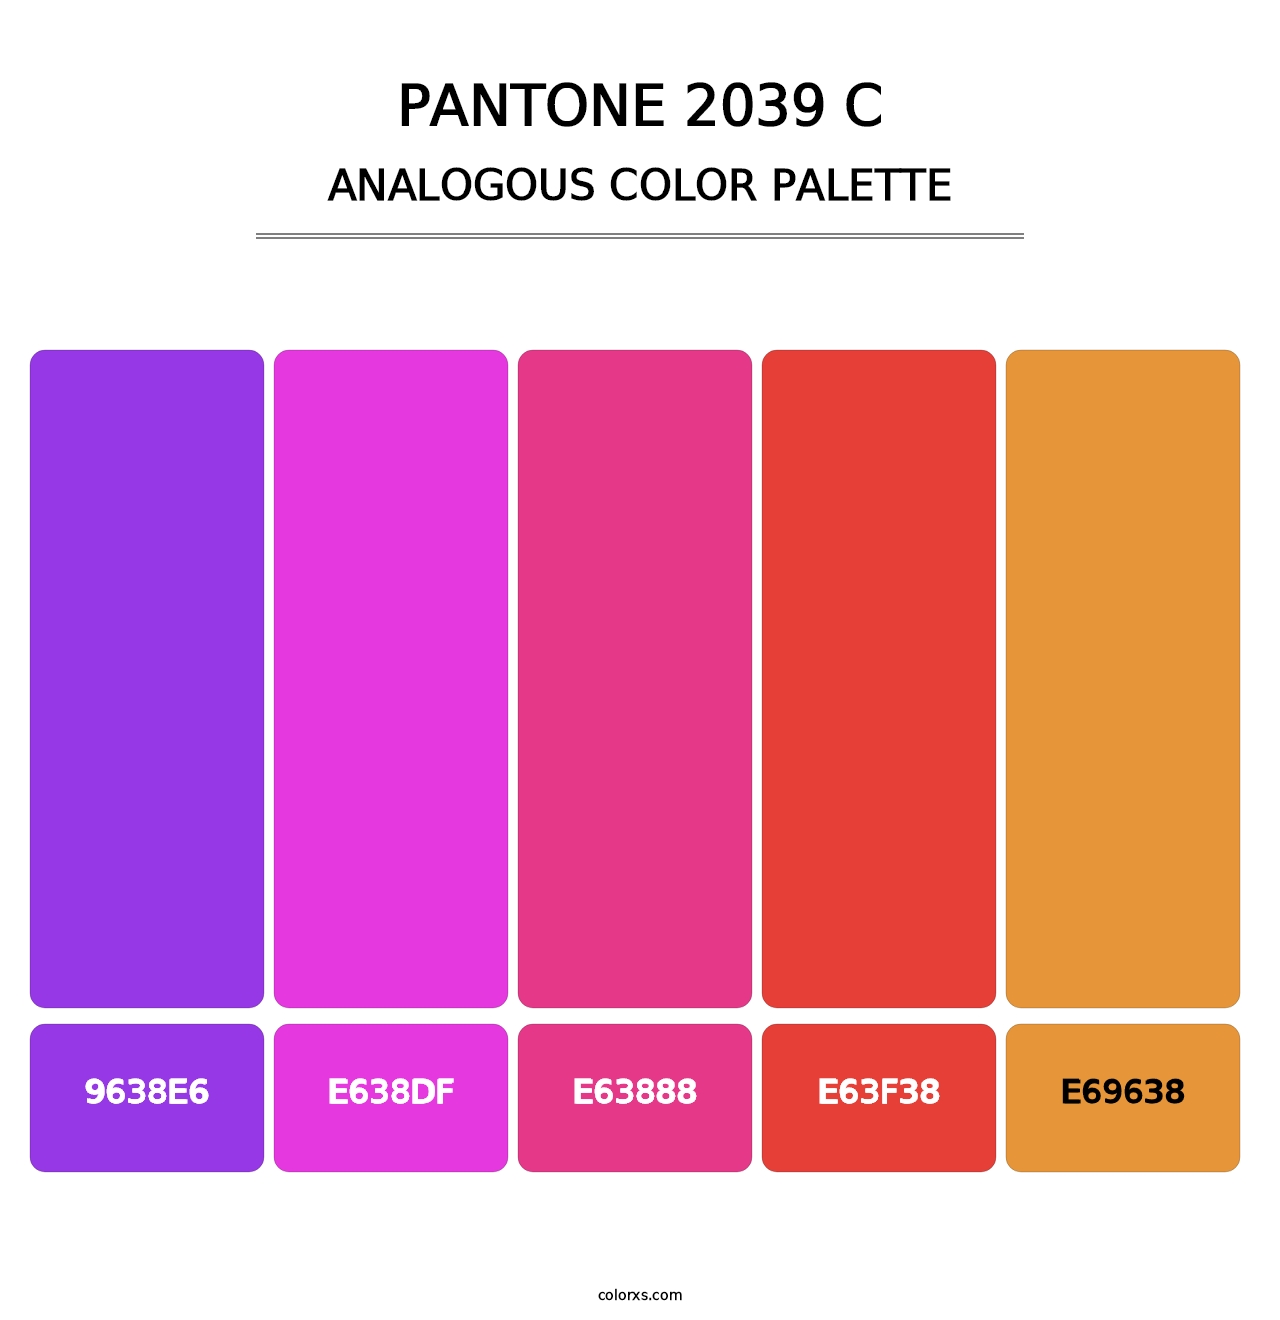 PANTONE 2039 C - Analogous Color Palette